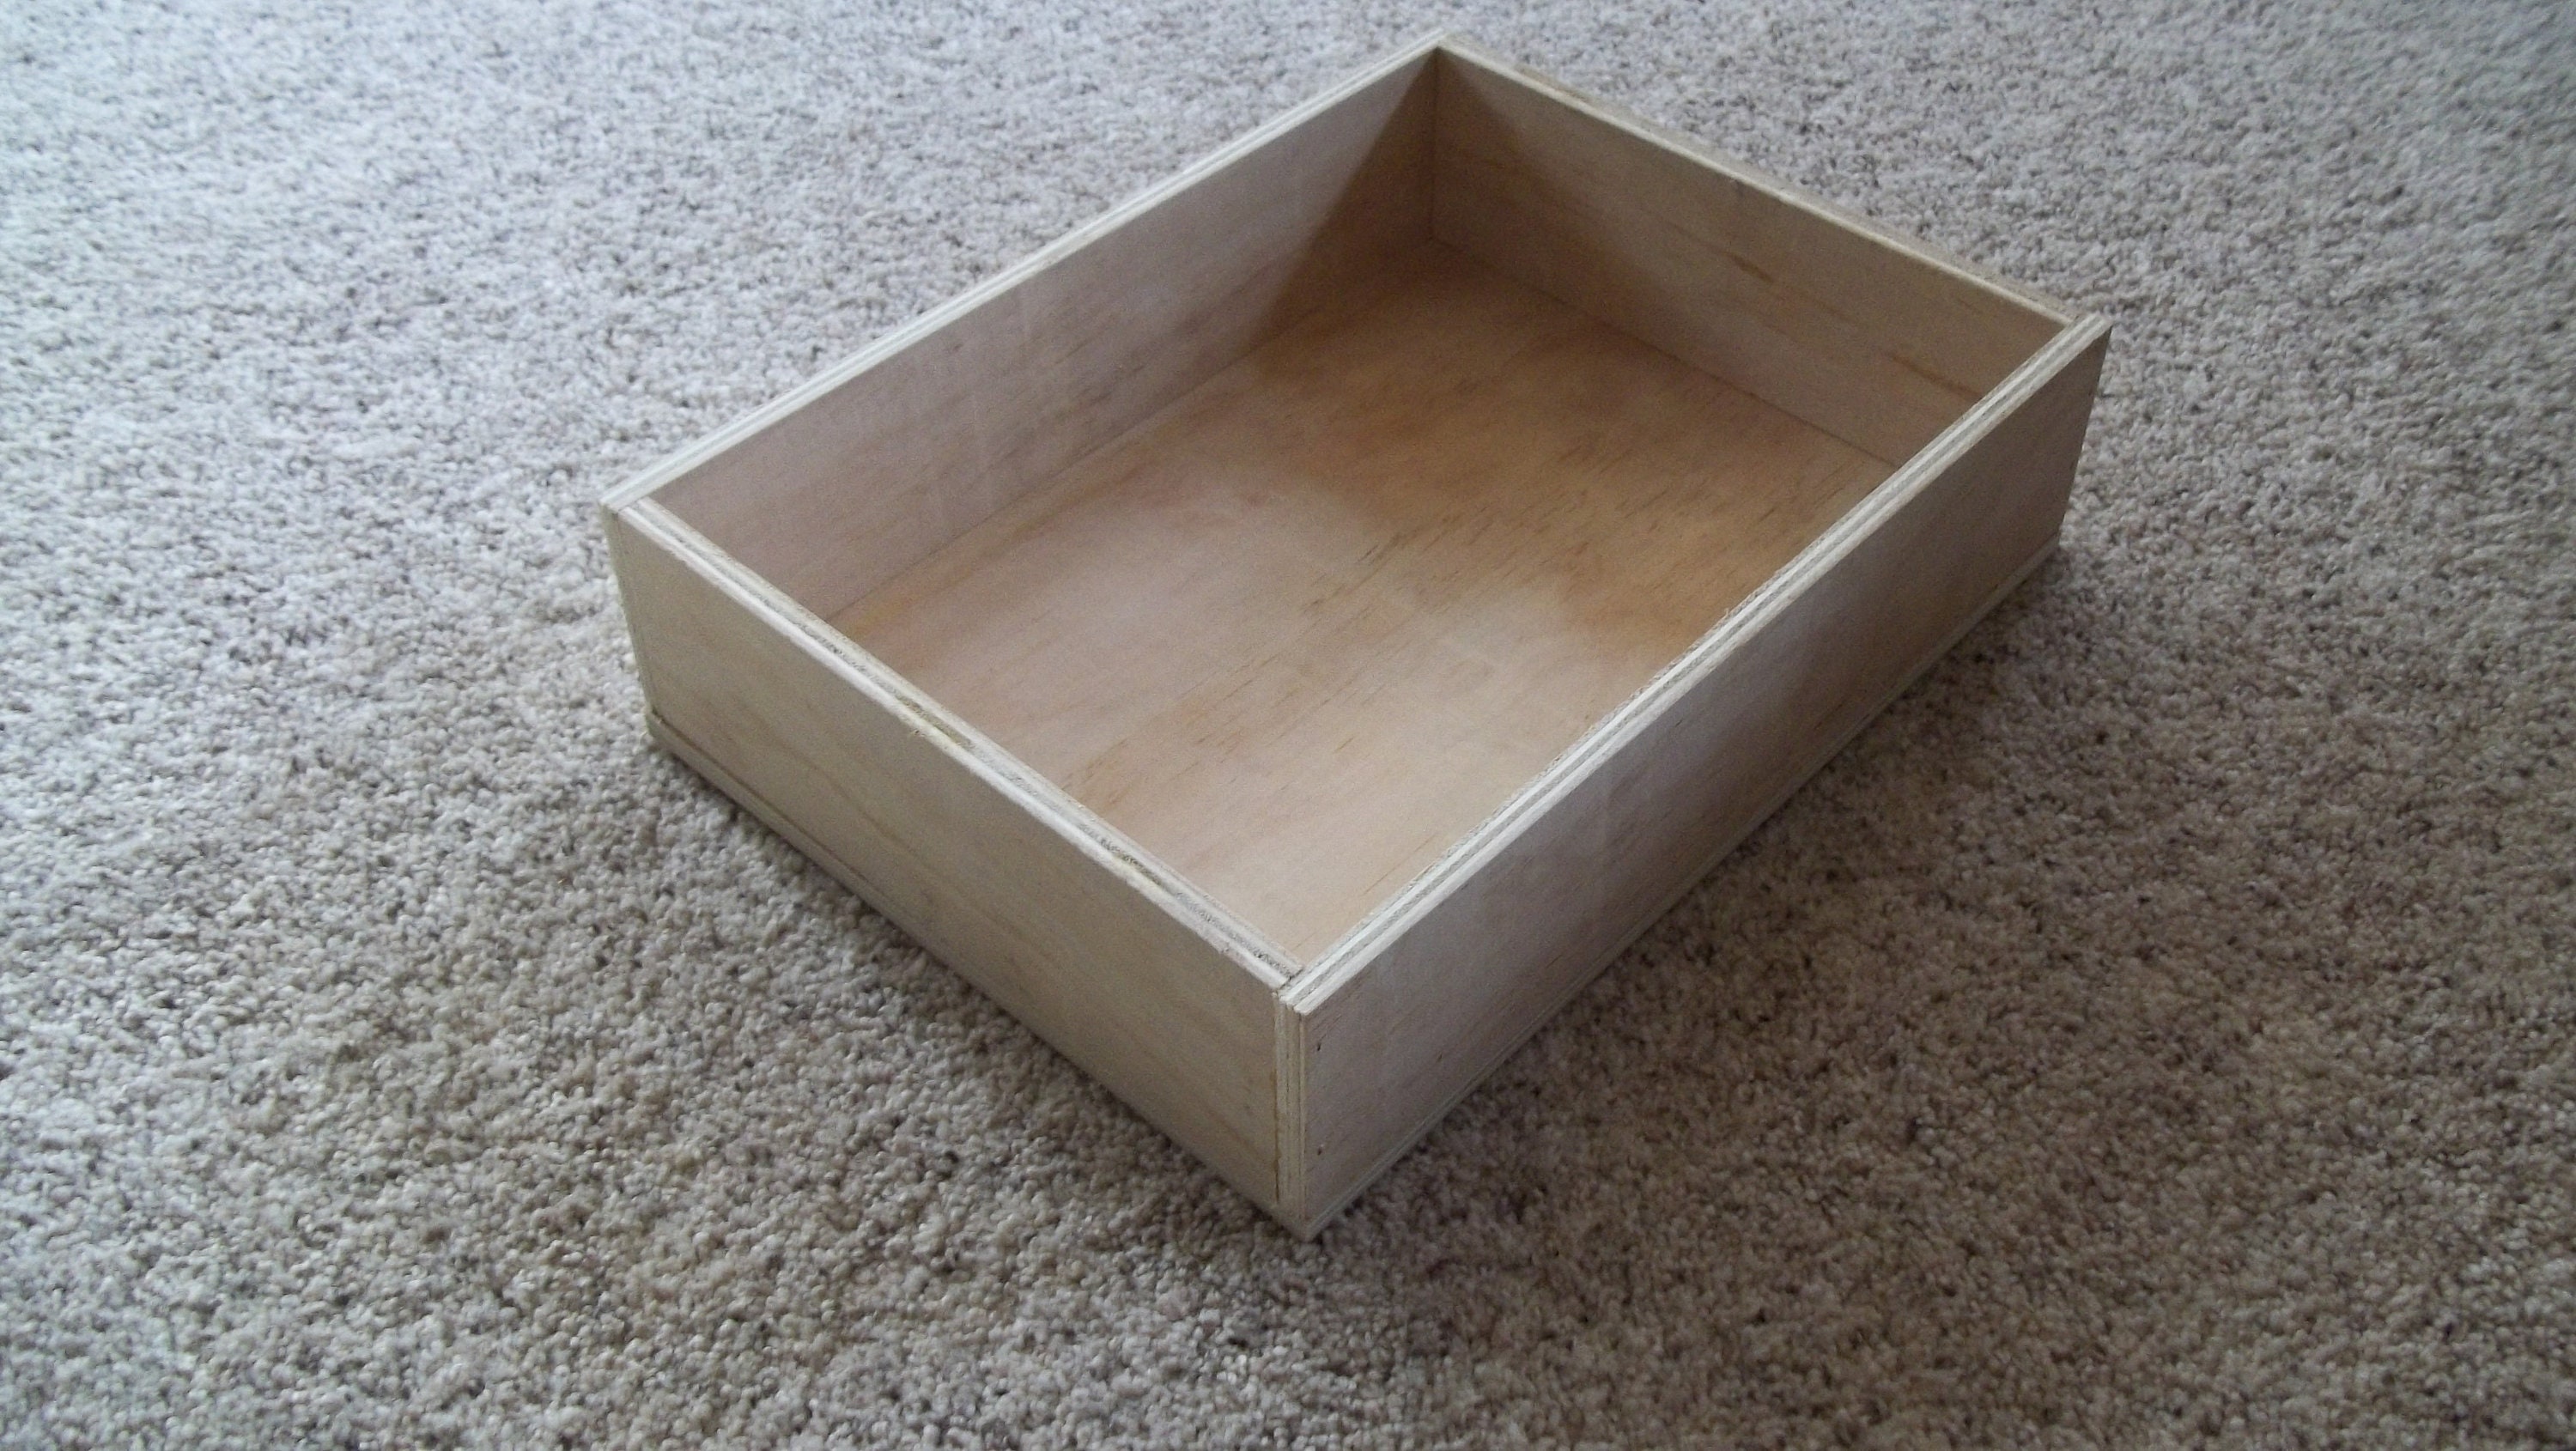 Wooden Round Divided Lidded Storage Box / Wooden Storage Box 9 1/2